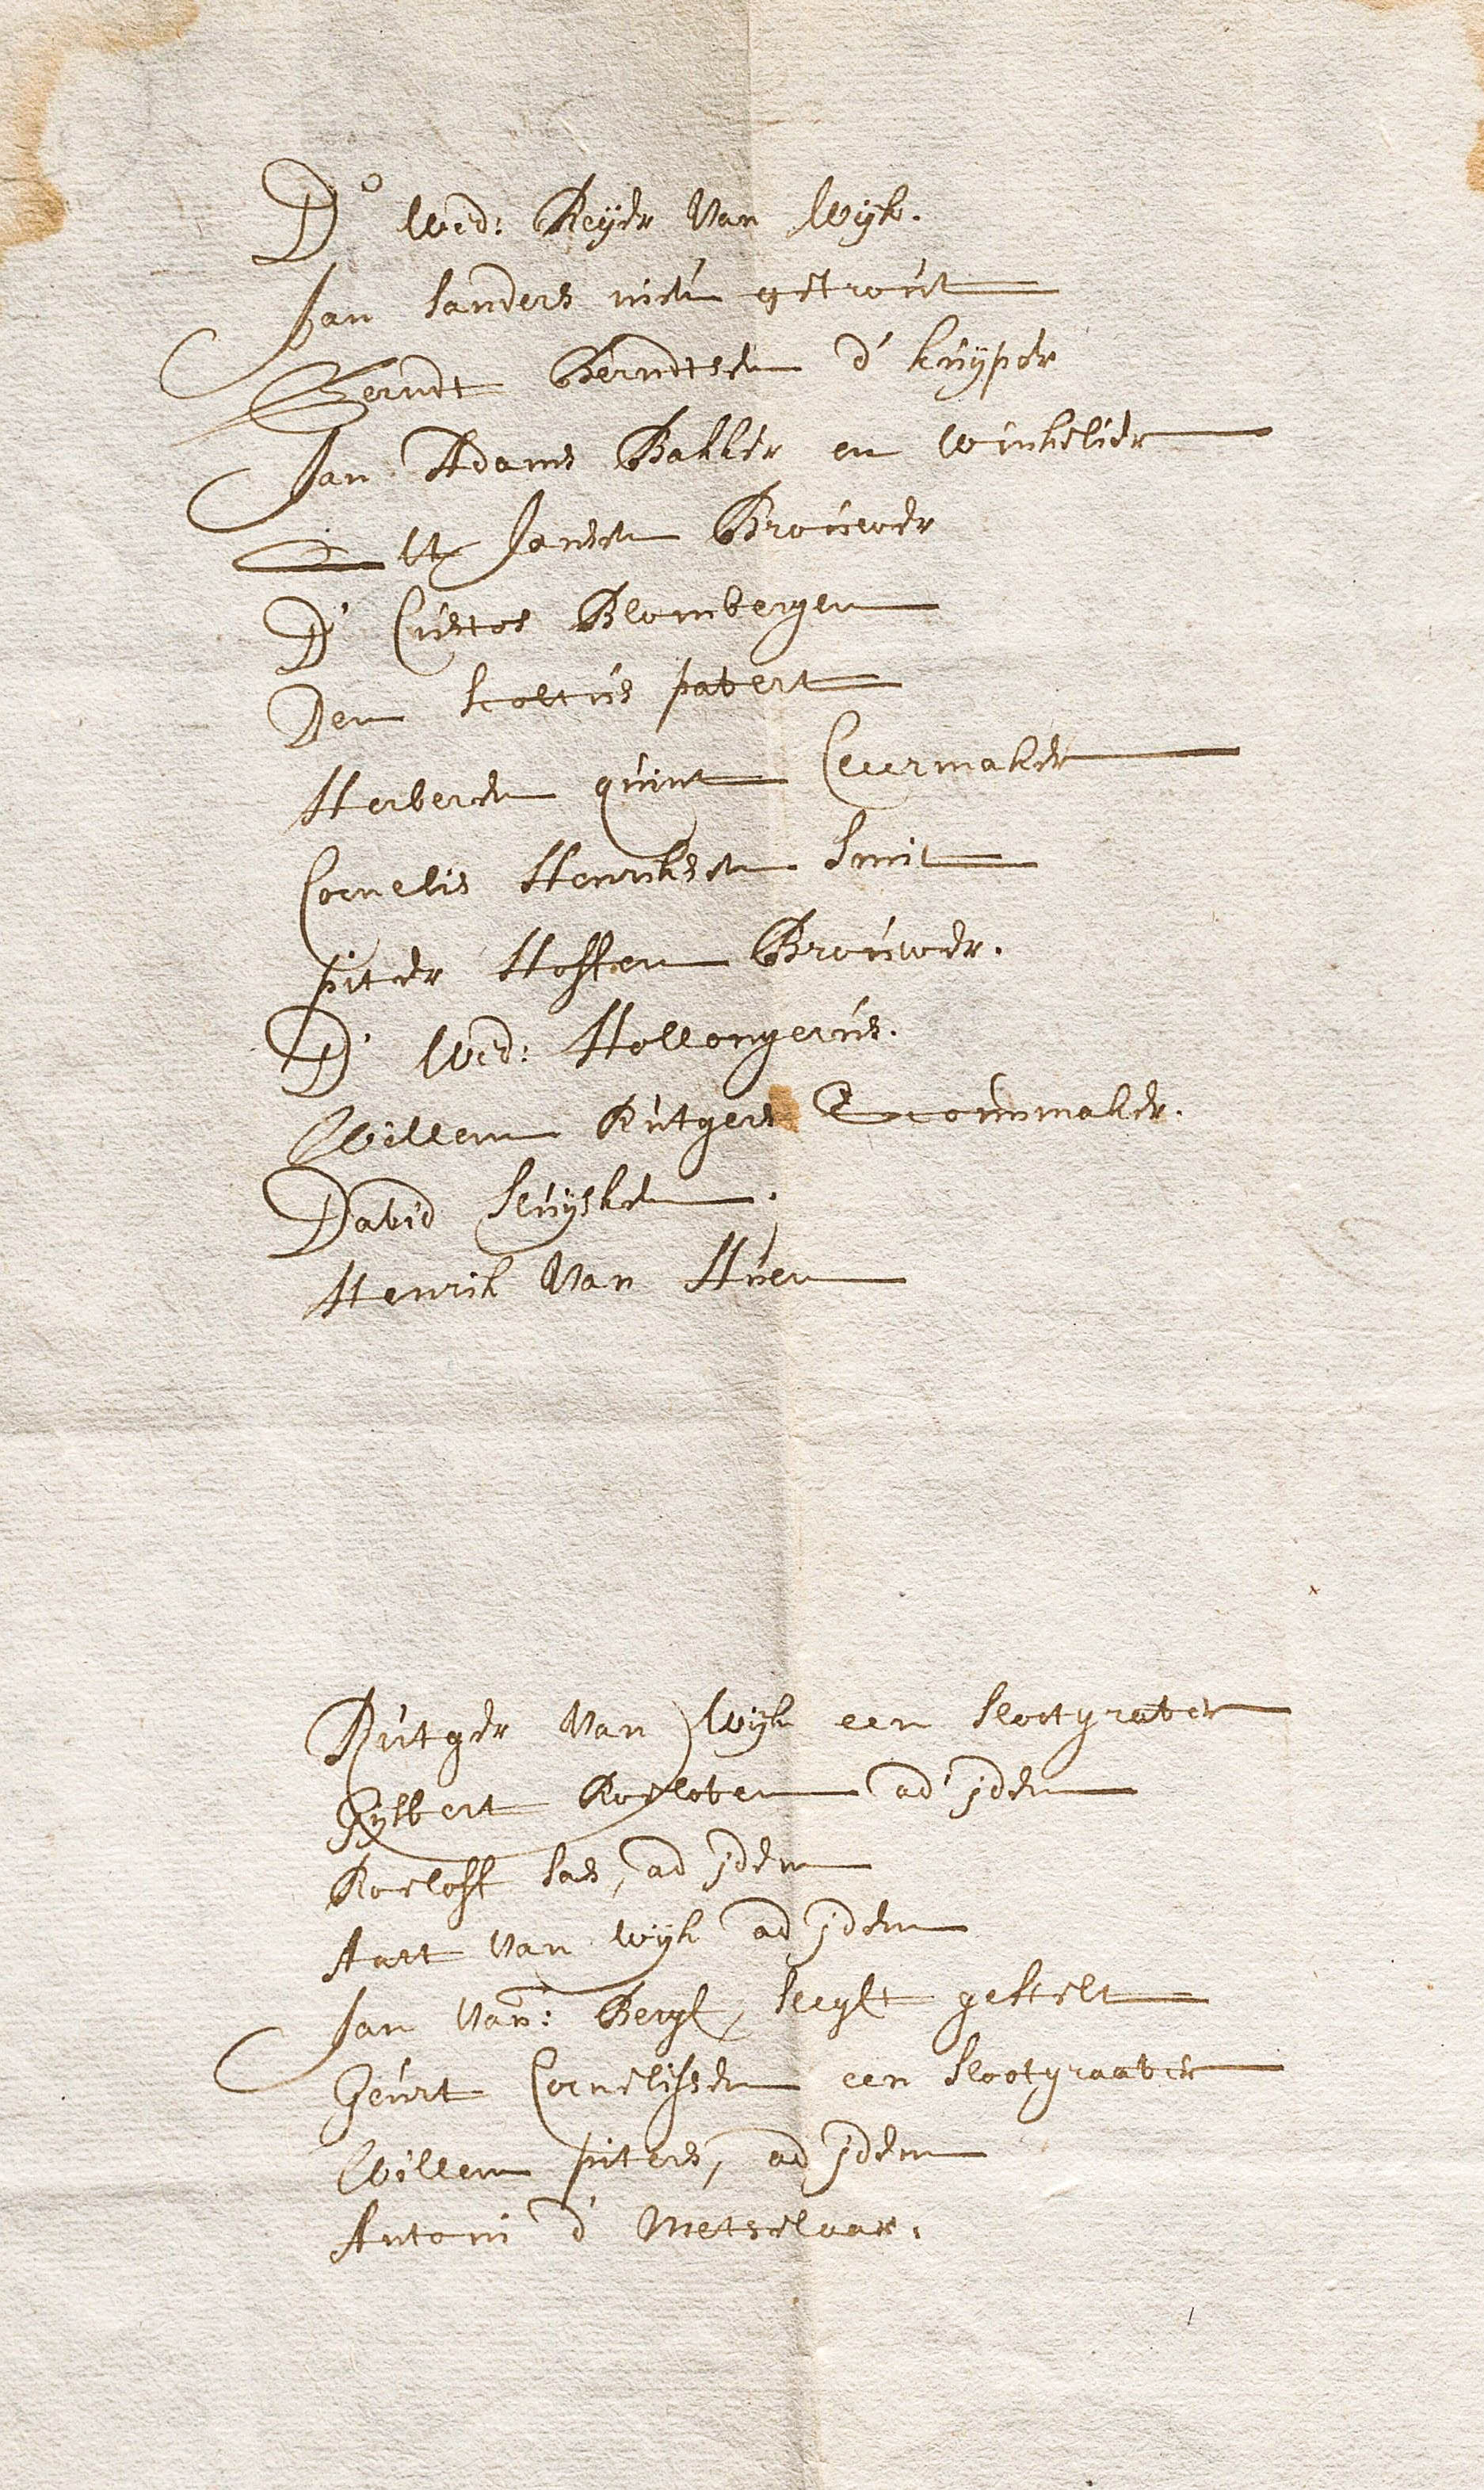 Inwonerslijst van IJzendoorn uit 1693 met vermelding van hun beroep of bedrijf 